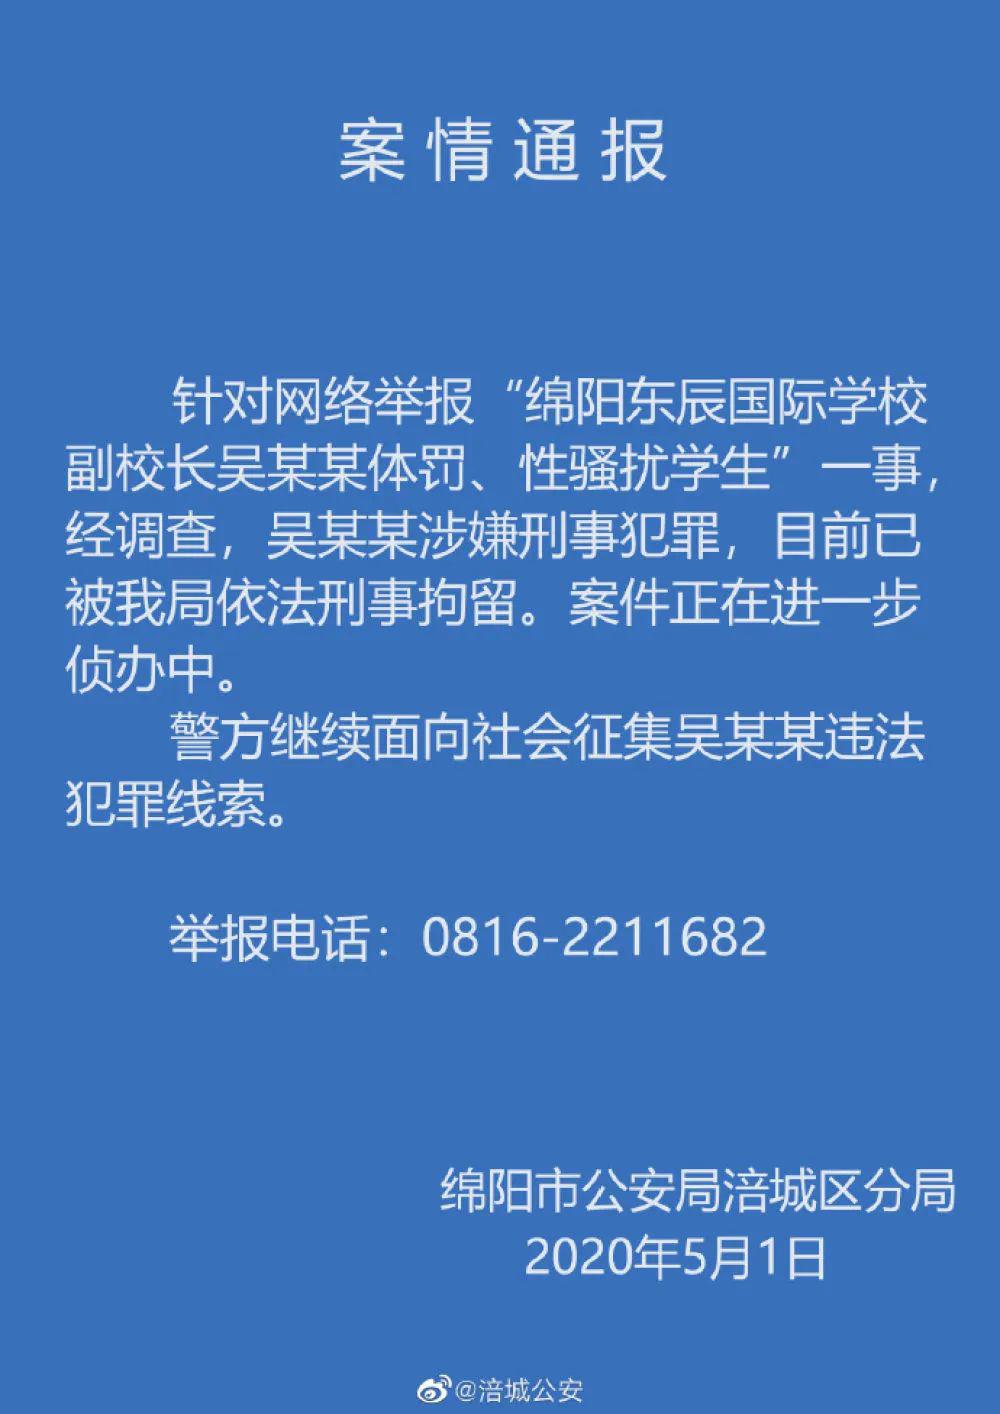 四川绵阳涉性骚扰副校长被刑拘，警方继续征集犯罪线索